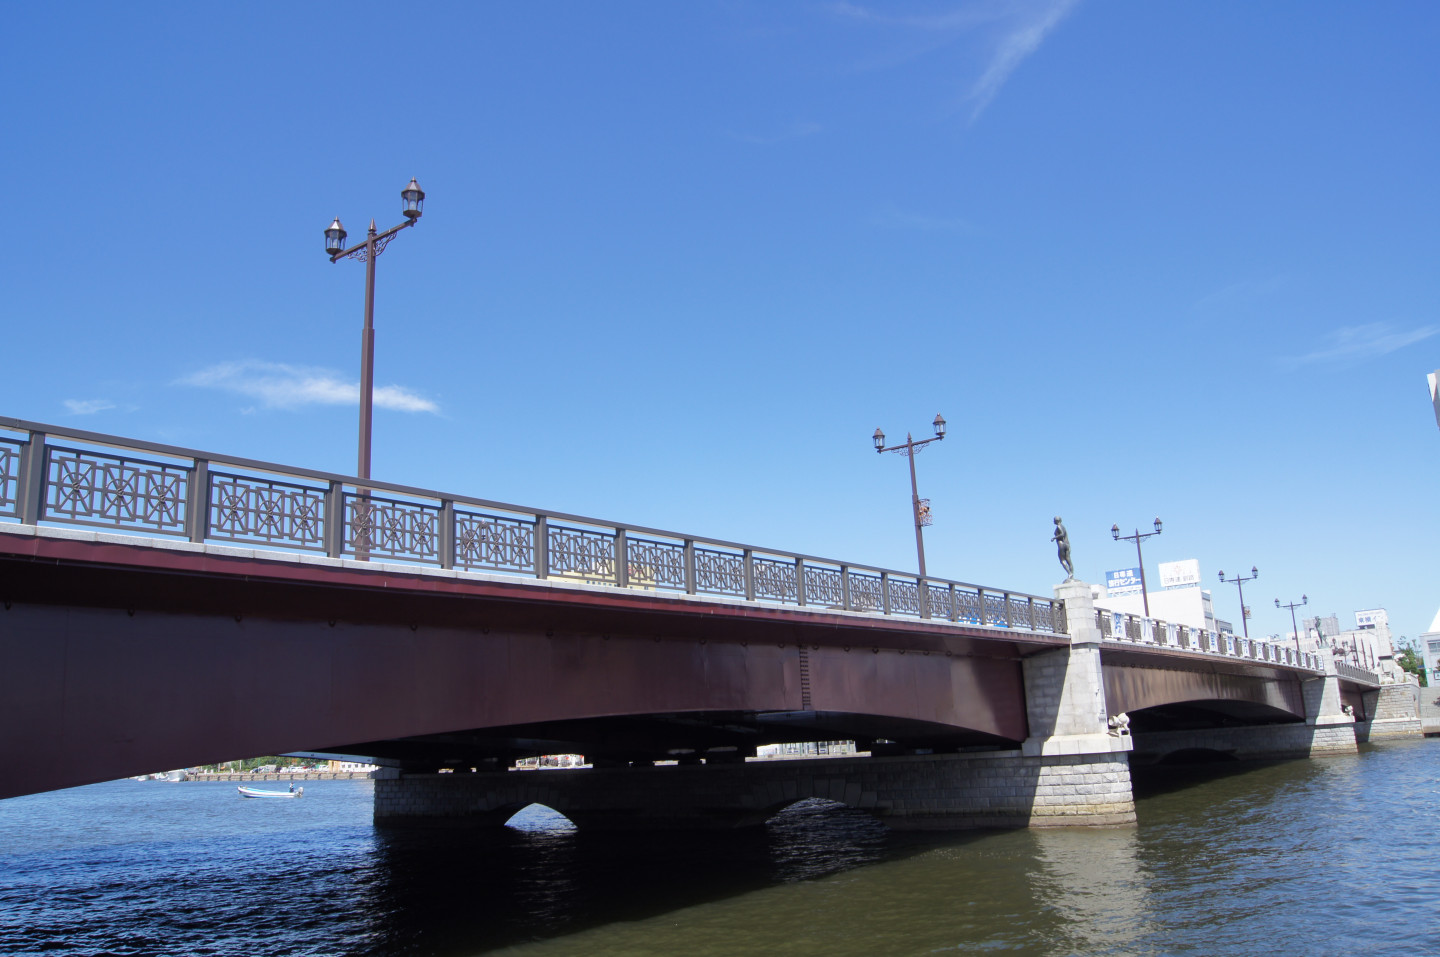 電影《輓歌》的外景拍攝地以幣舞橋及釧路川河畔為主